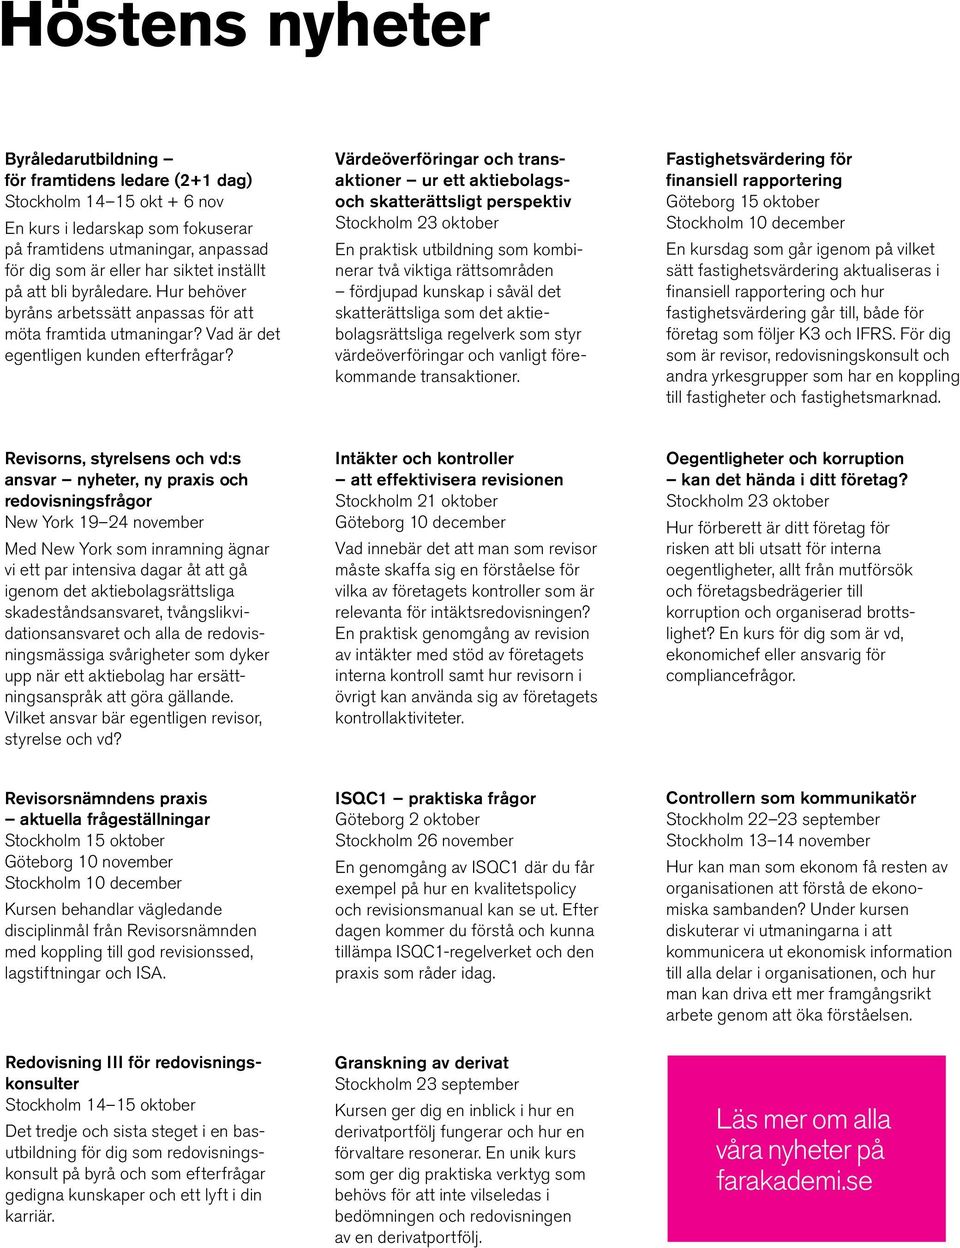 Värdeöverföringar och transaktioner ur ett aktiebolagsoch skatterättsligt perspektiv Stockholm 23 oktober En praktisk utbildning som kombinerar två viktiga rättsområden fördjupad kunskap i såväl det